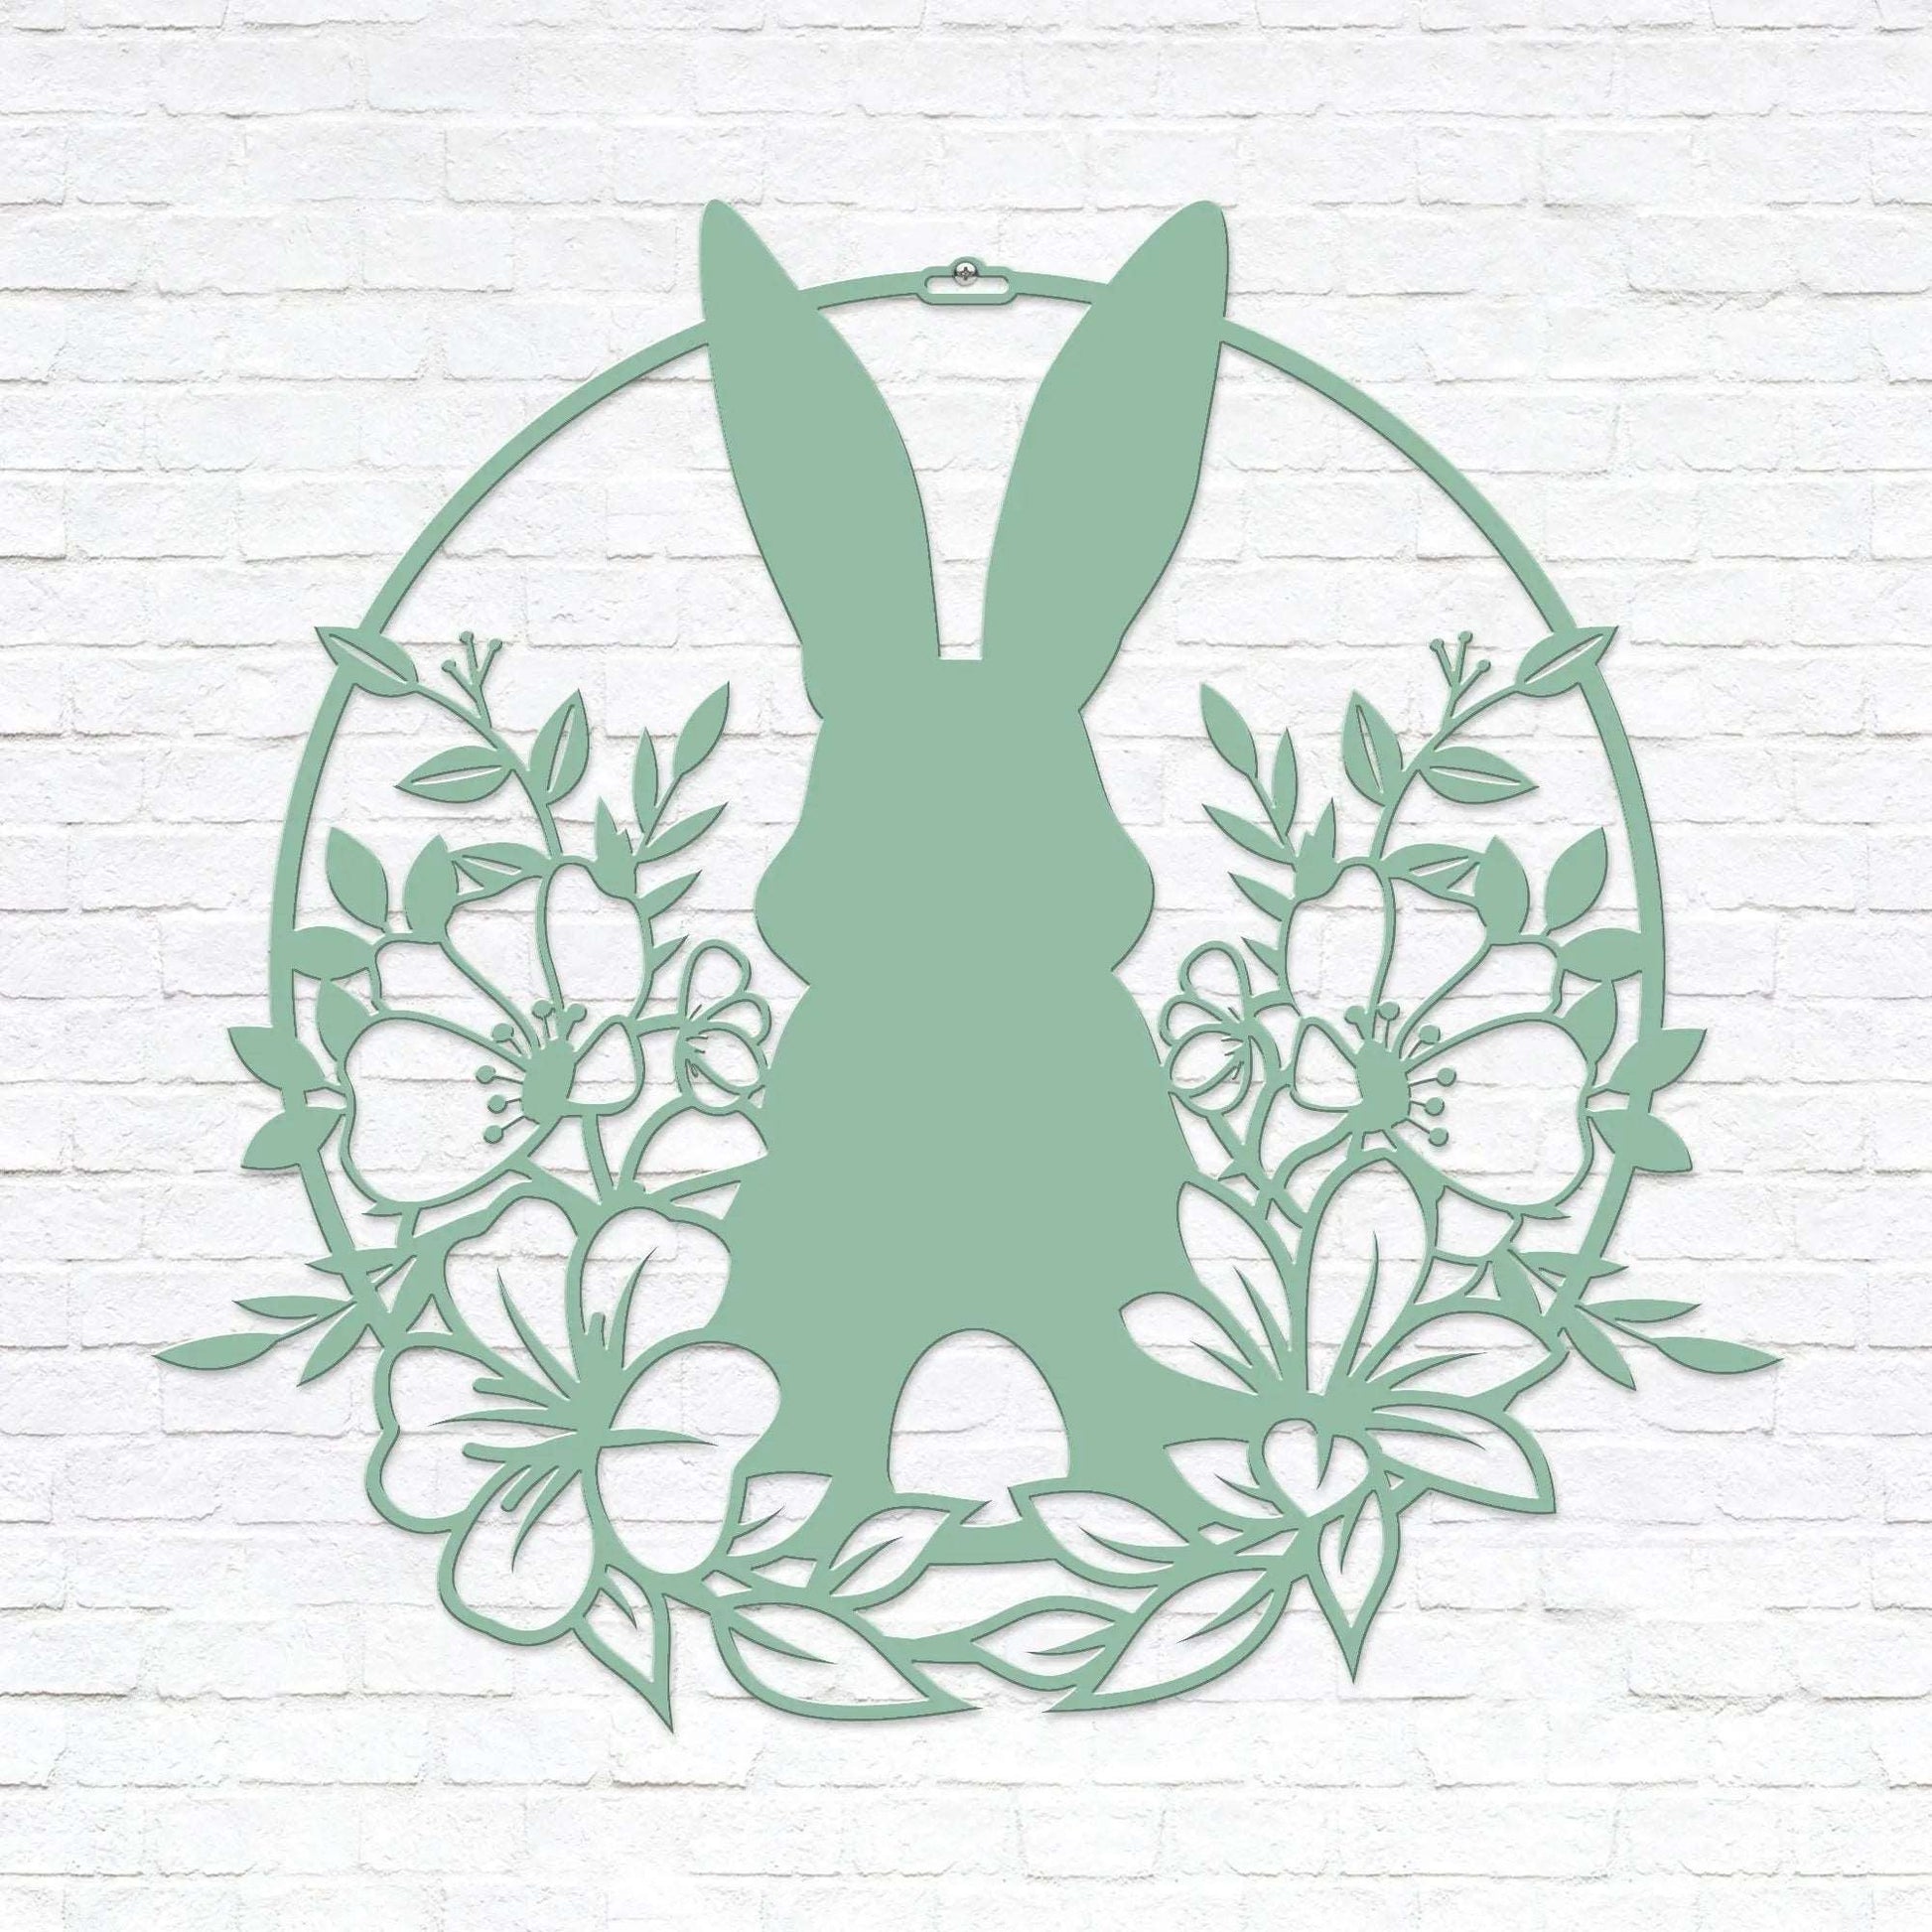 Easter Bunny in Flowers Door Wreath Monogram House Sensations Art   